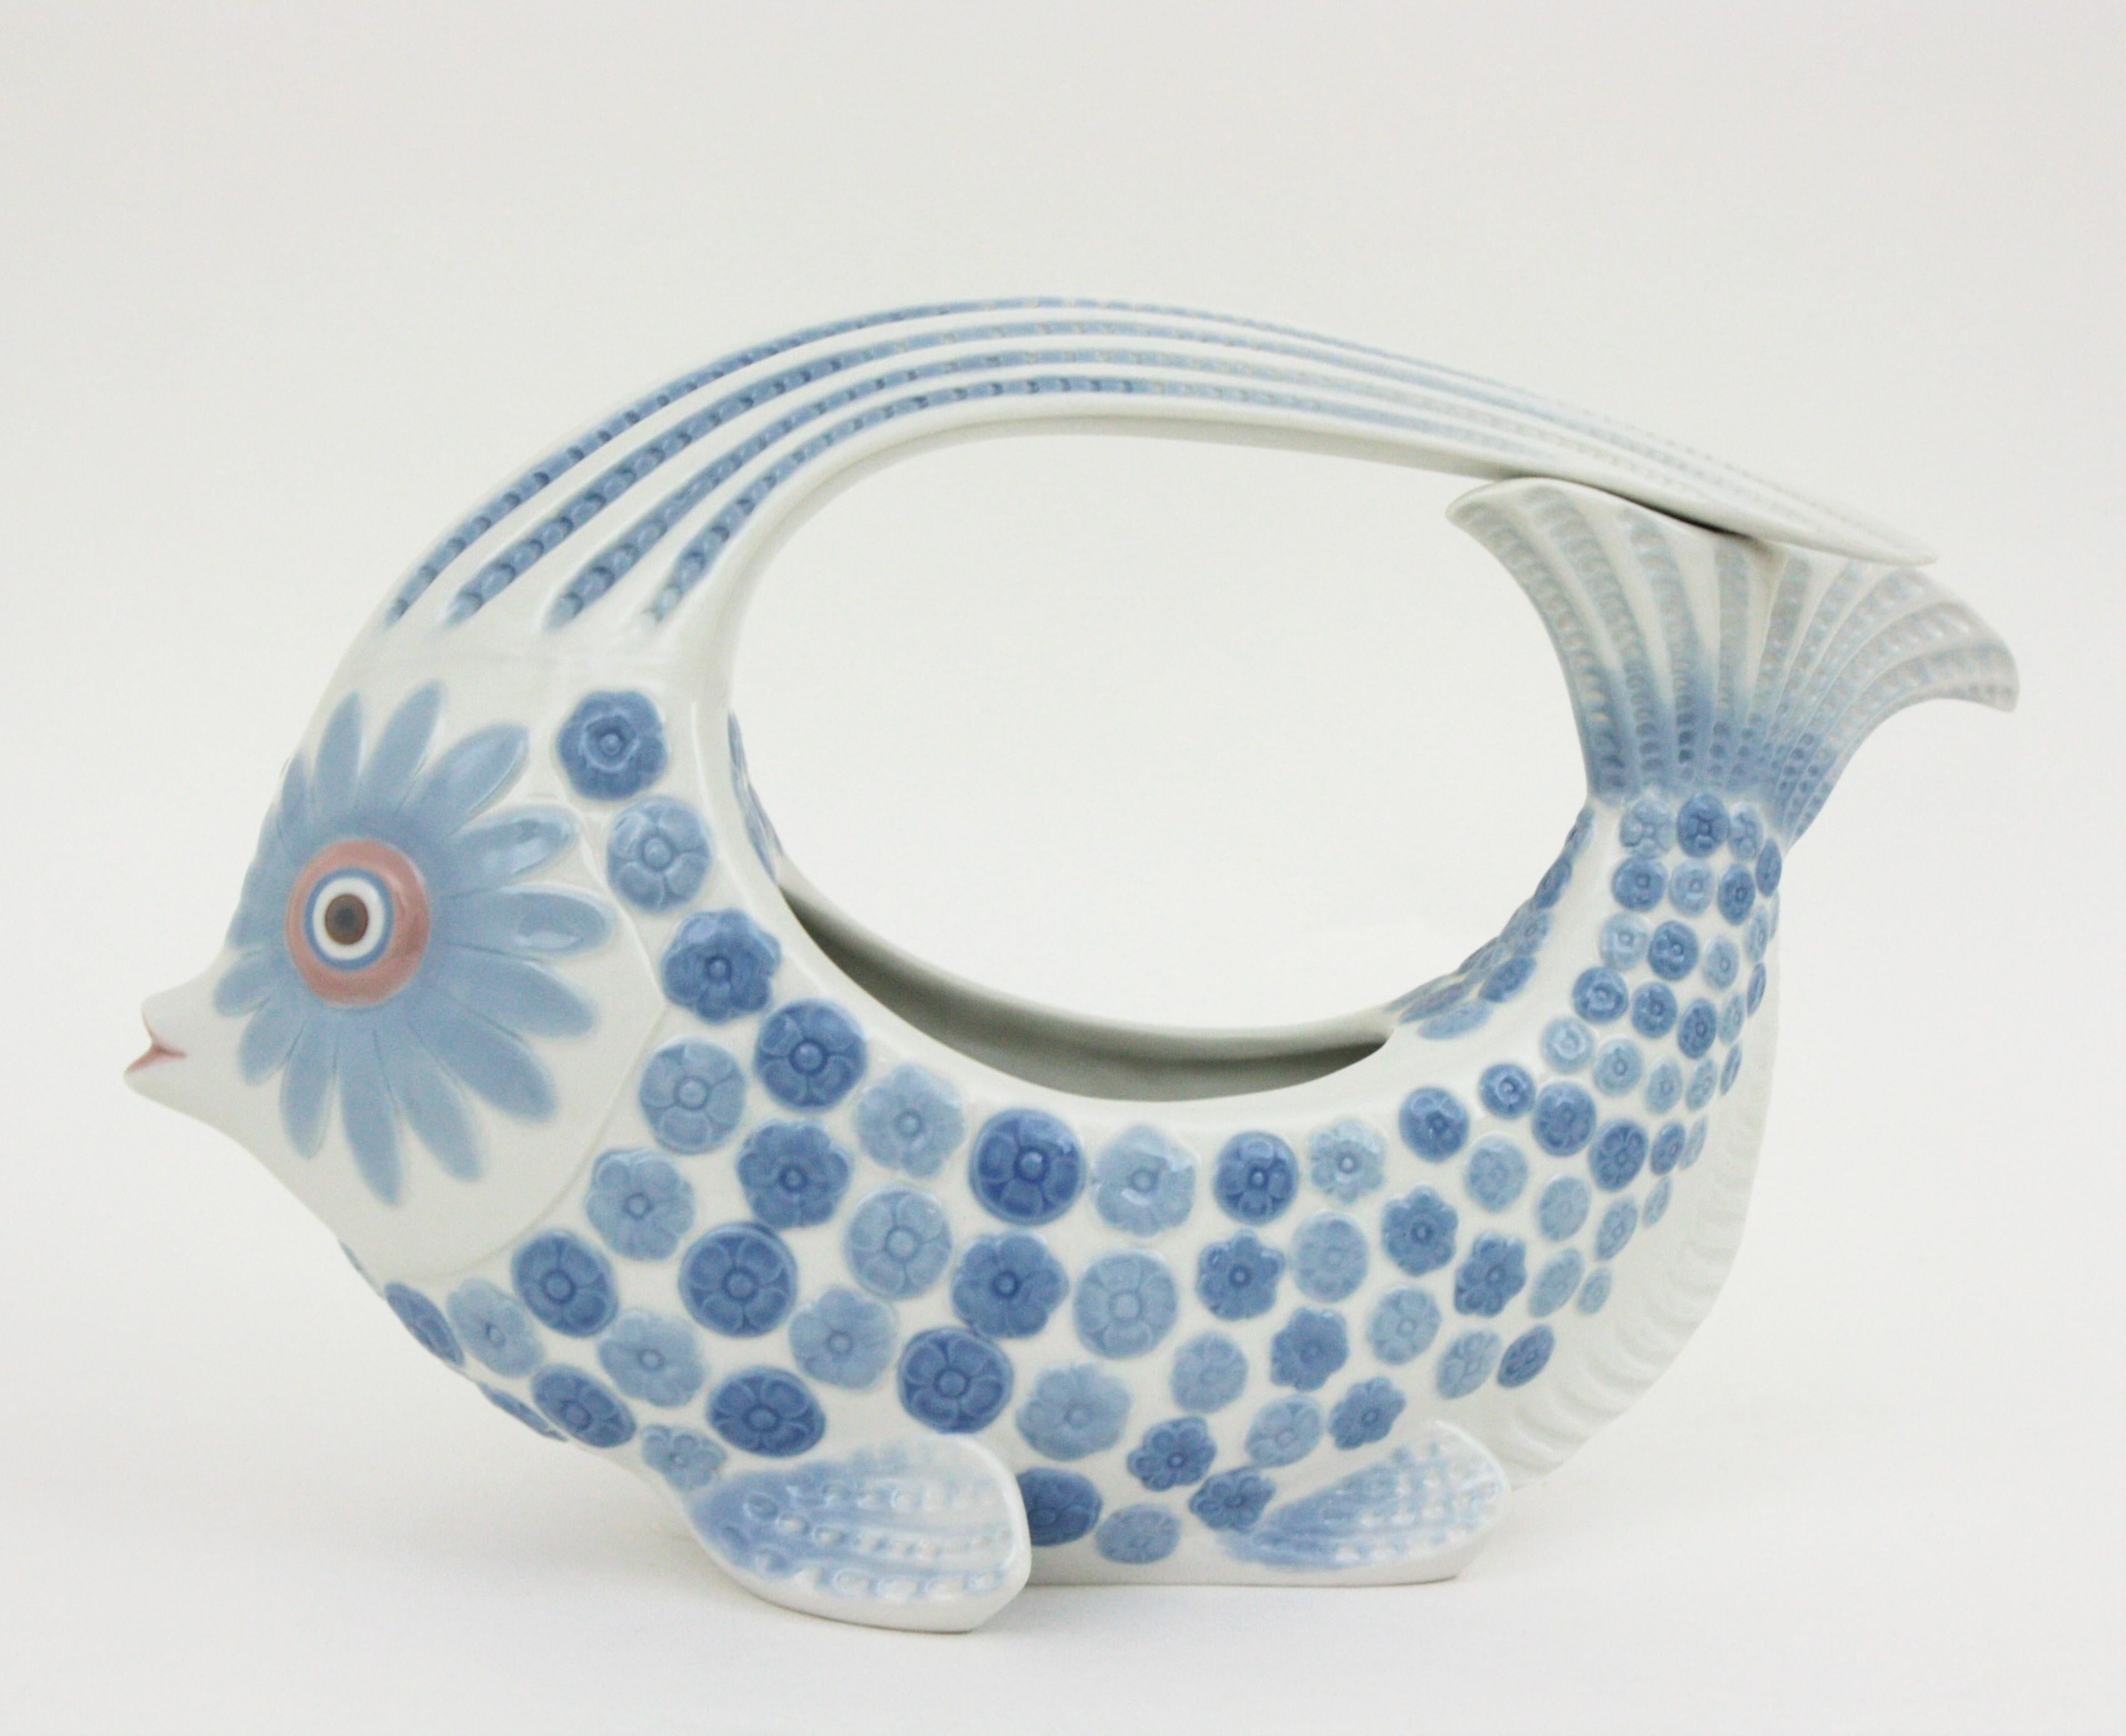 Molded Lladró Porcelain Blue White Fish Centerpiece Vase Planter, Spain, 1970s For Sale